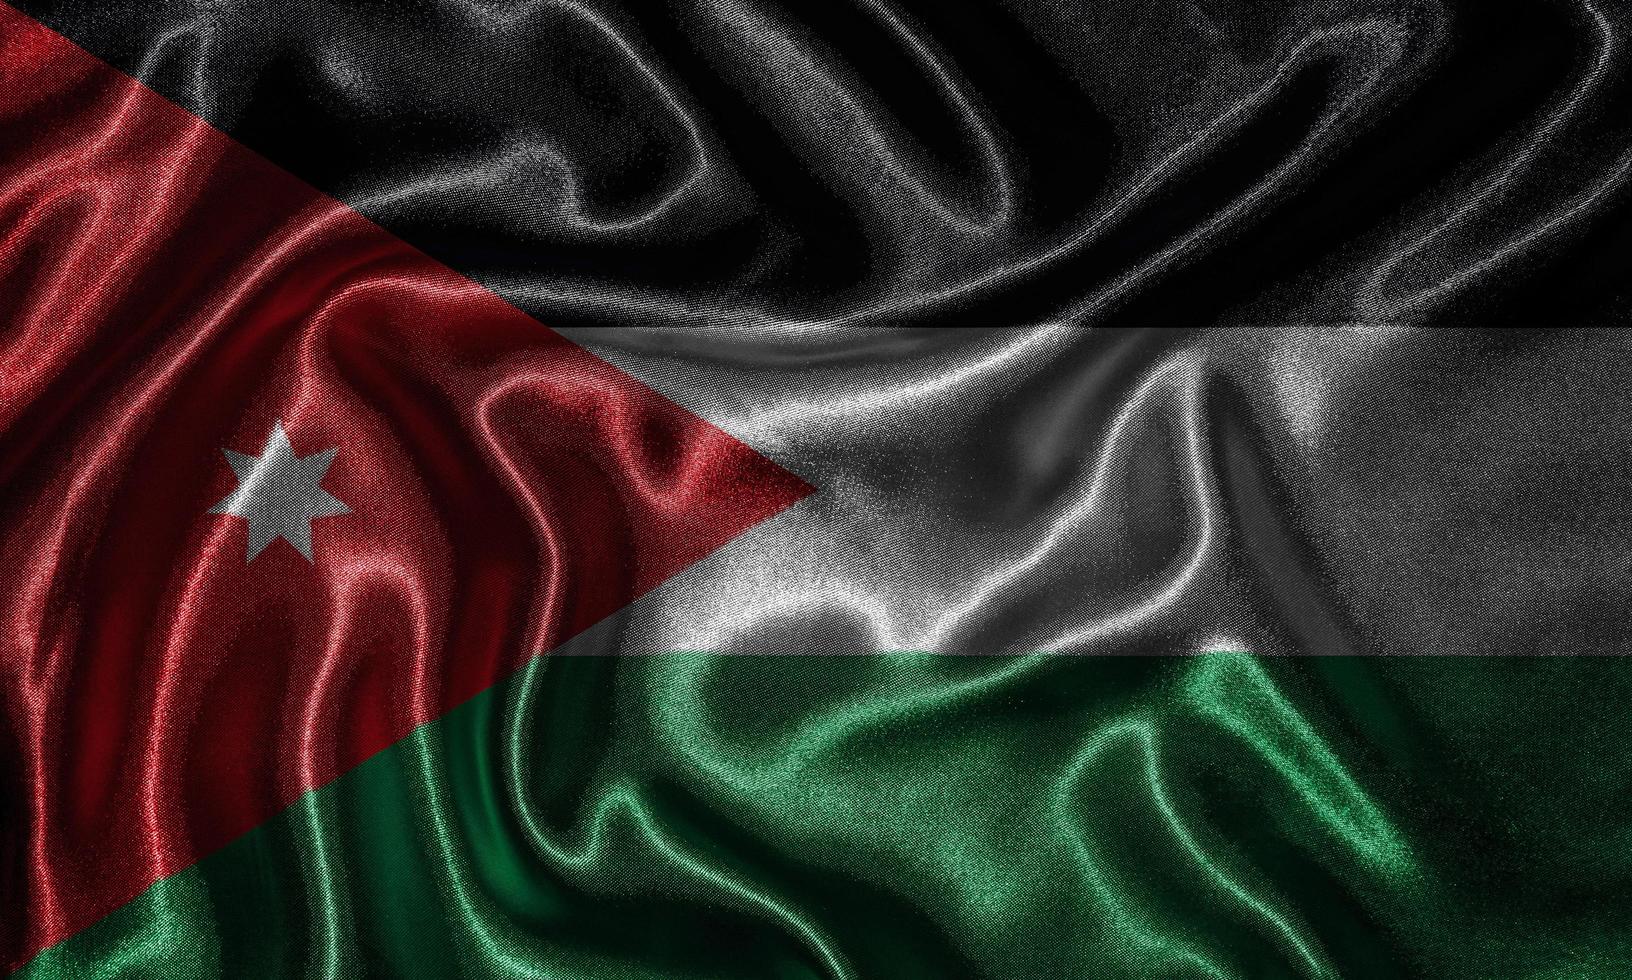 papel de parede por bandeira de Jordânia e bandeira por tecido. foto